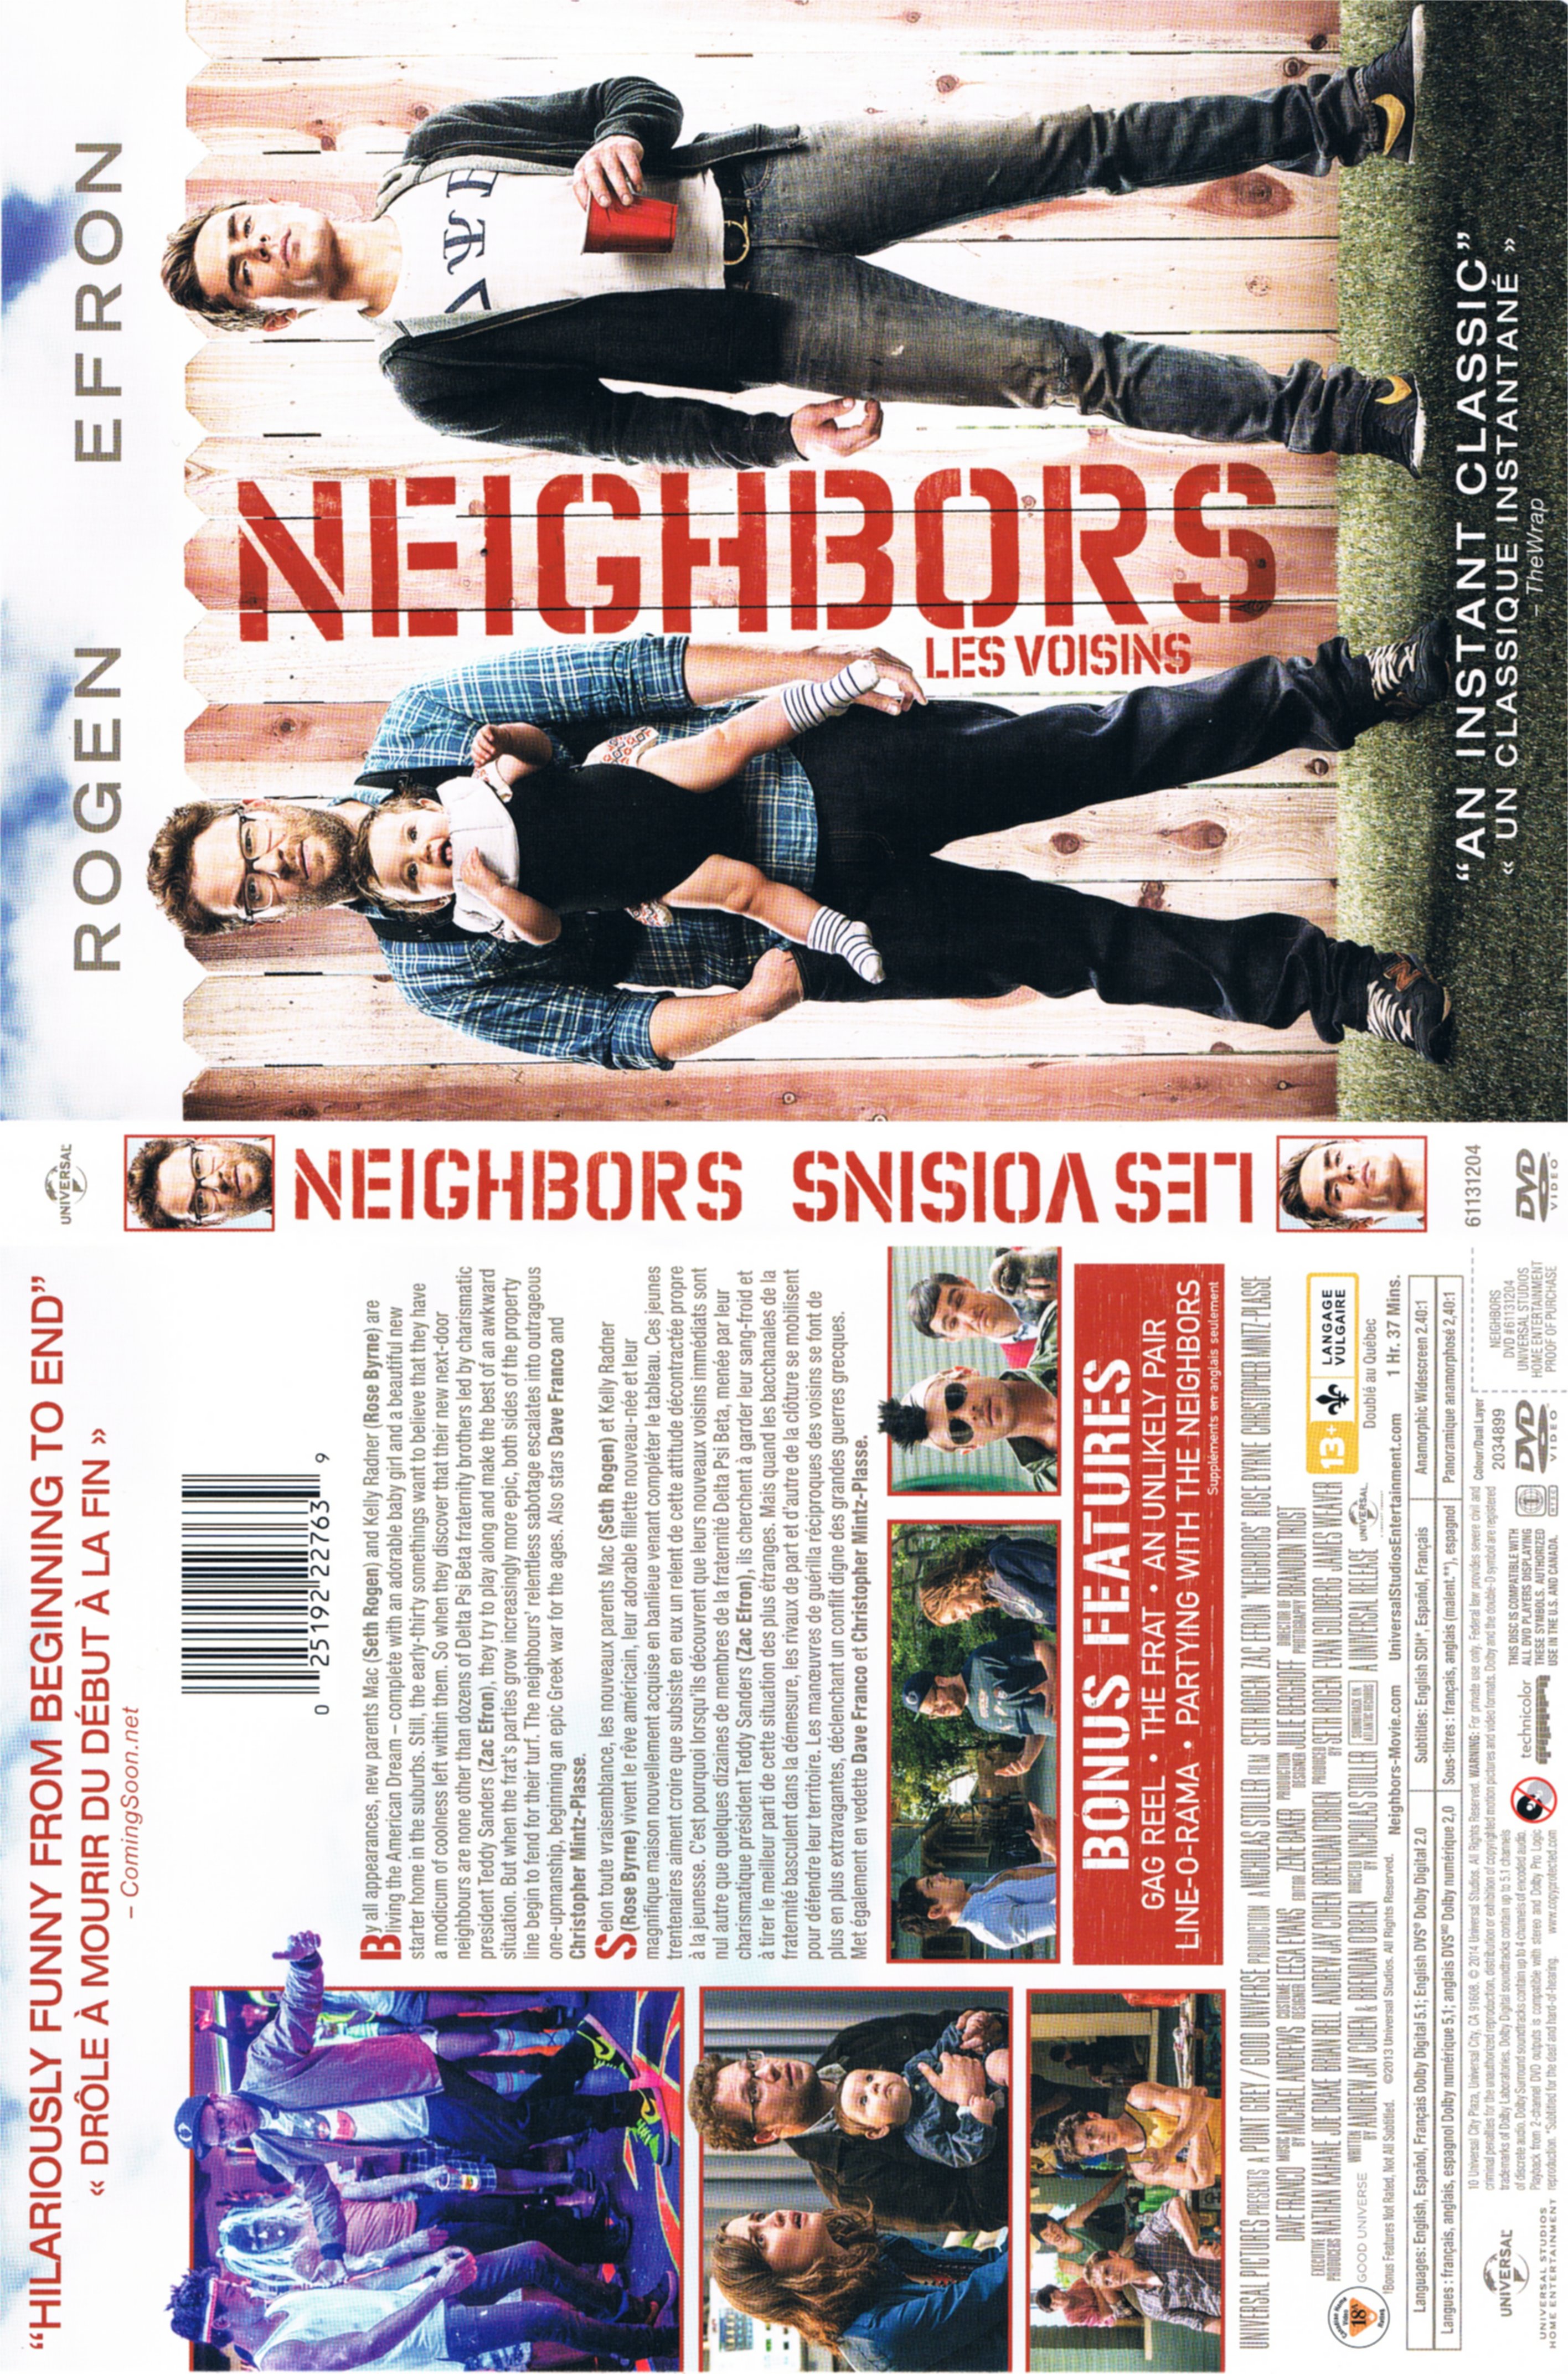 Jaquette DVD Les voisins - Neighbors (Canadiennes)